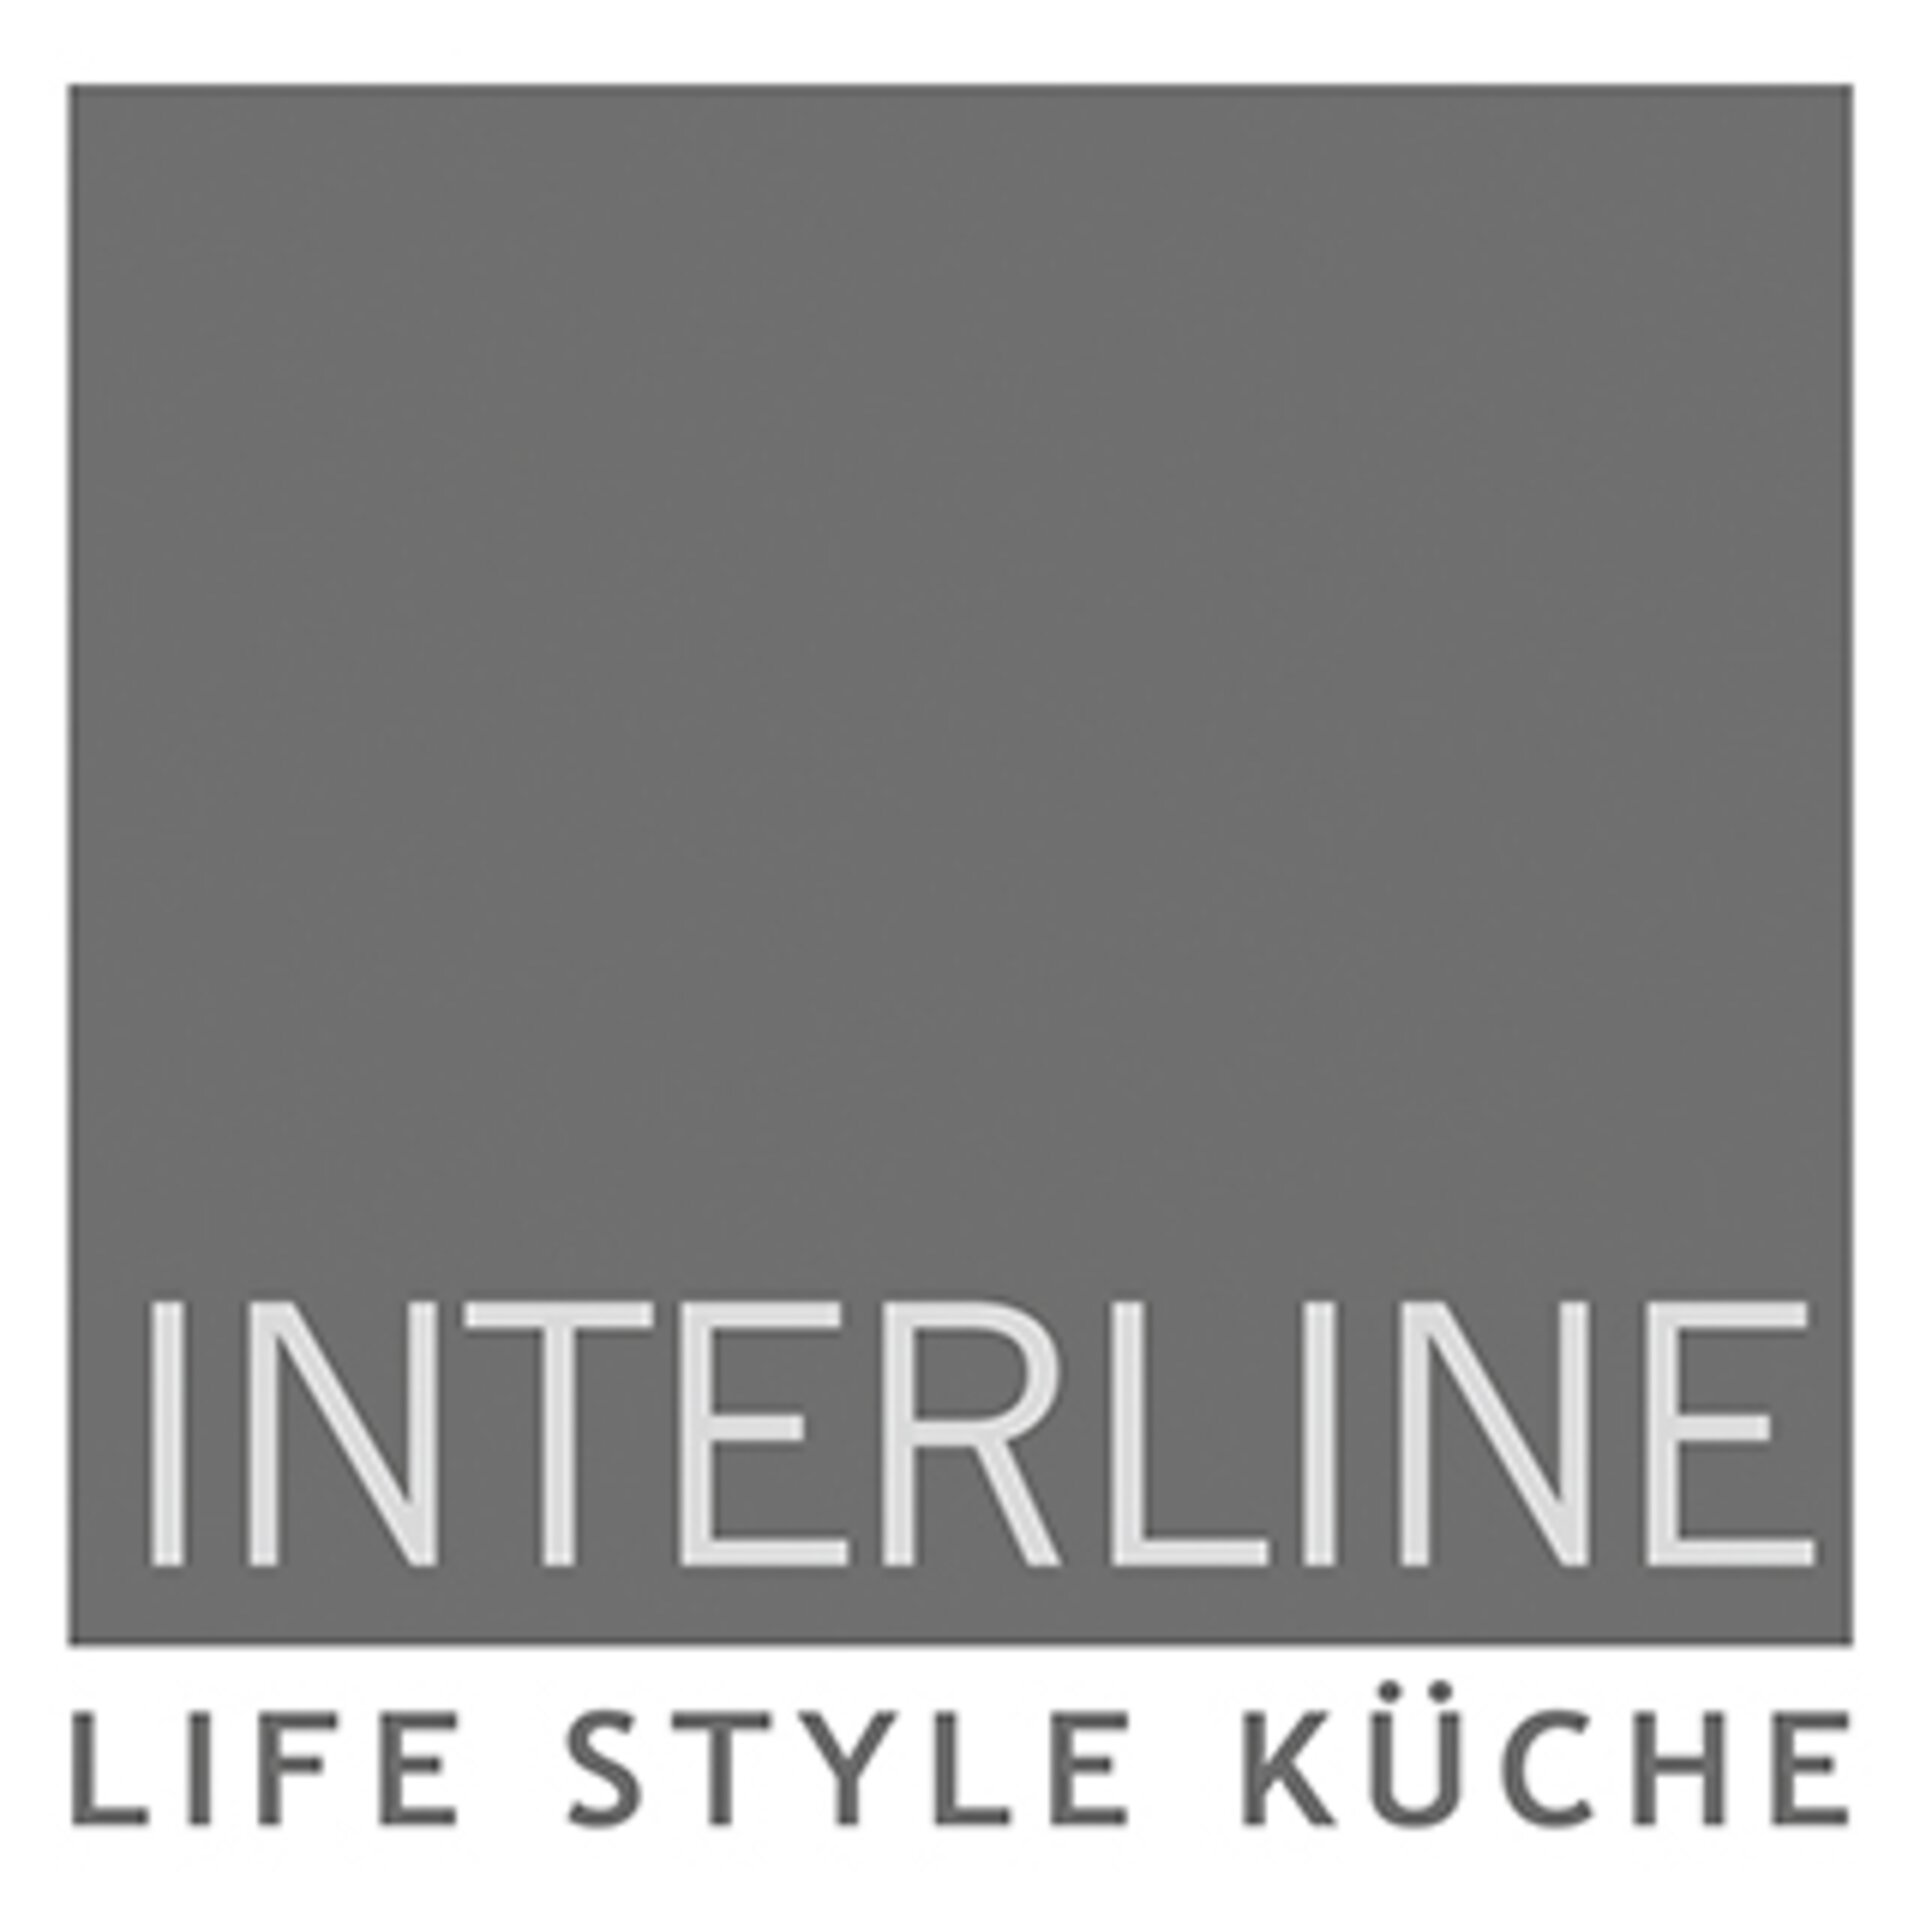 Interline - Life Style Küche Logo